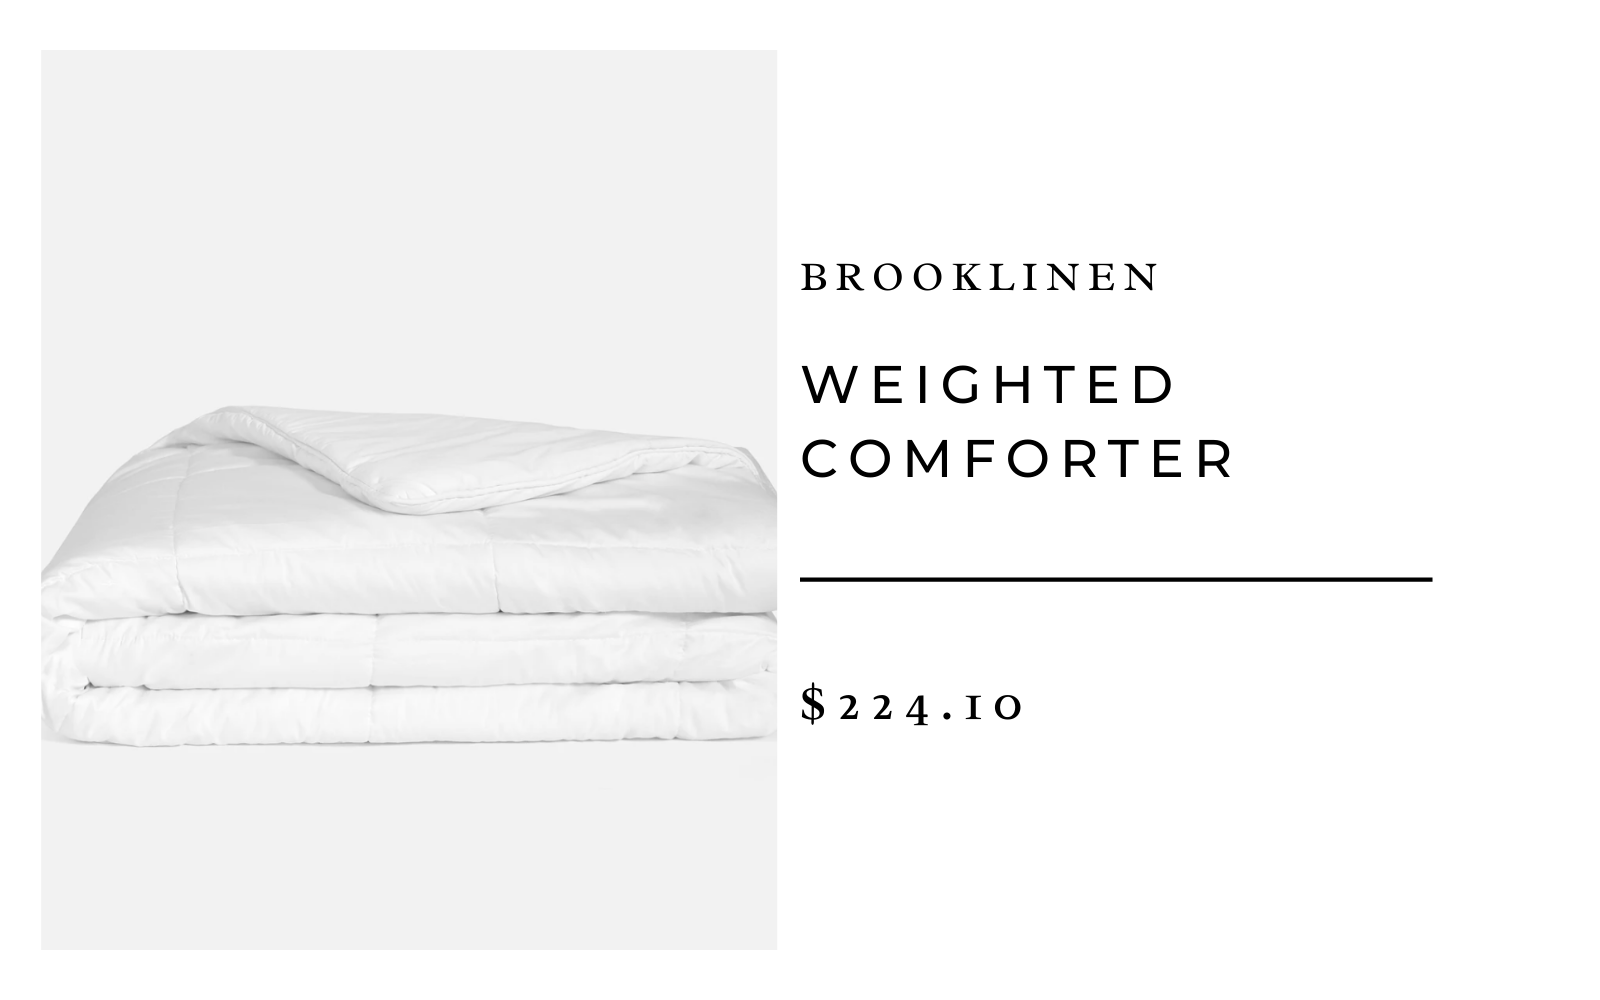 Brooklinen Weighted Comforter